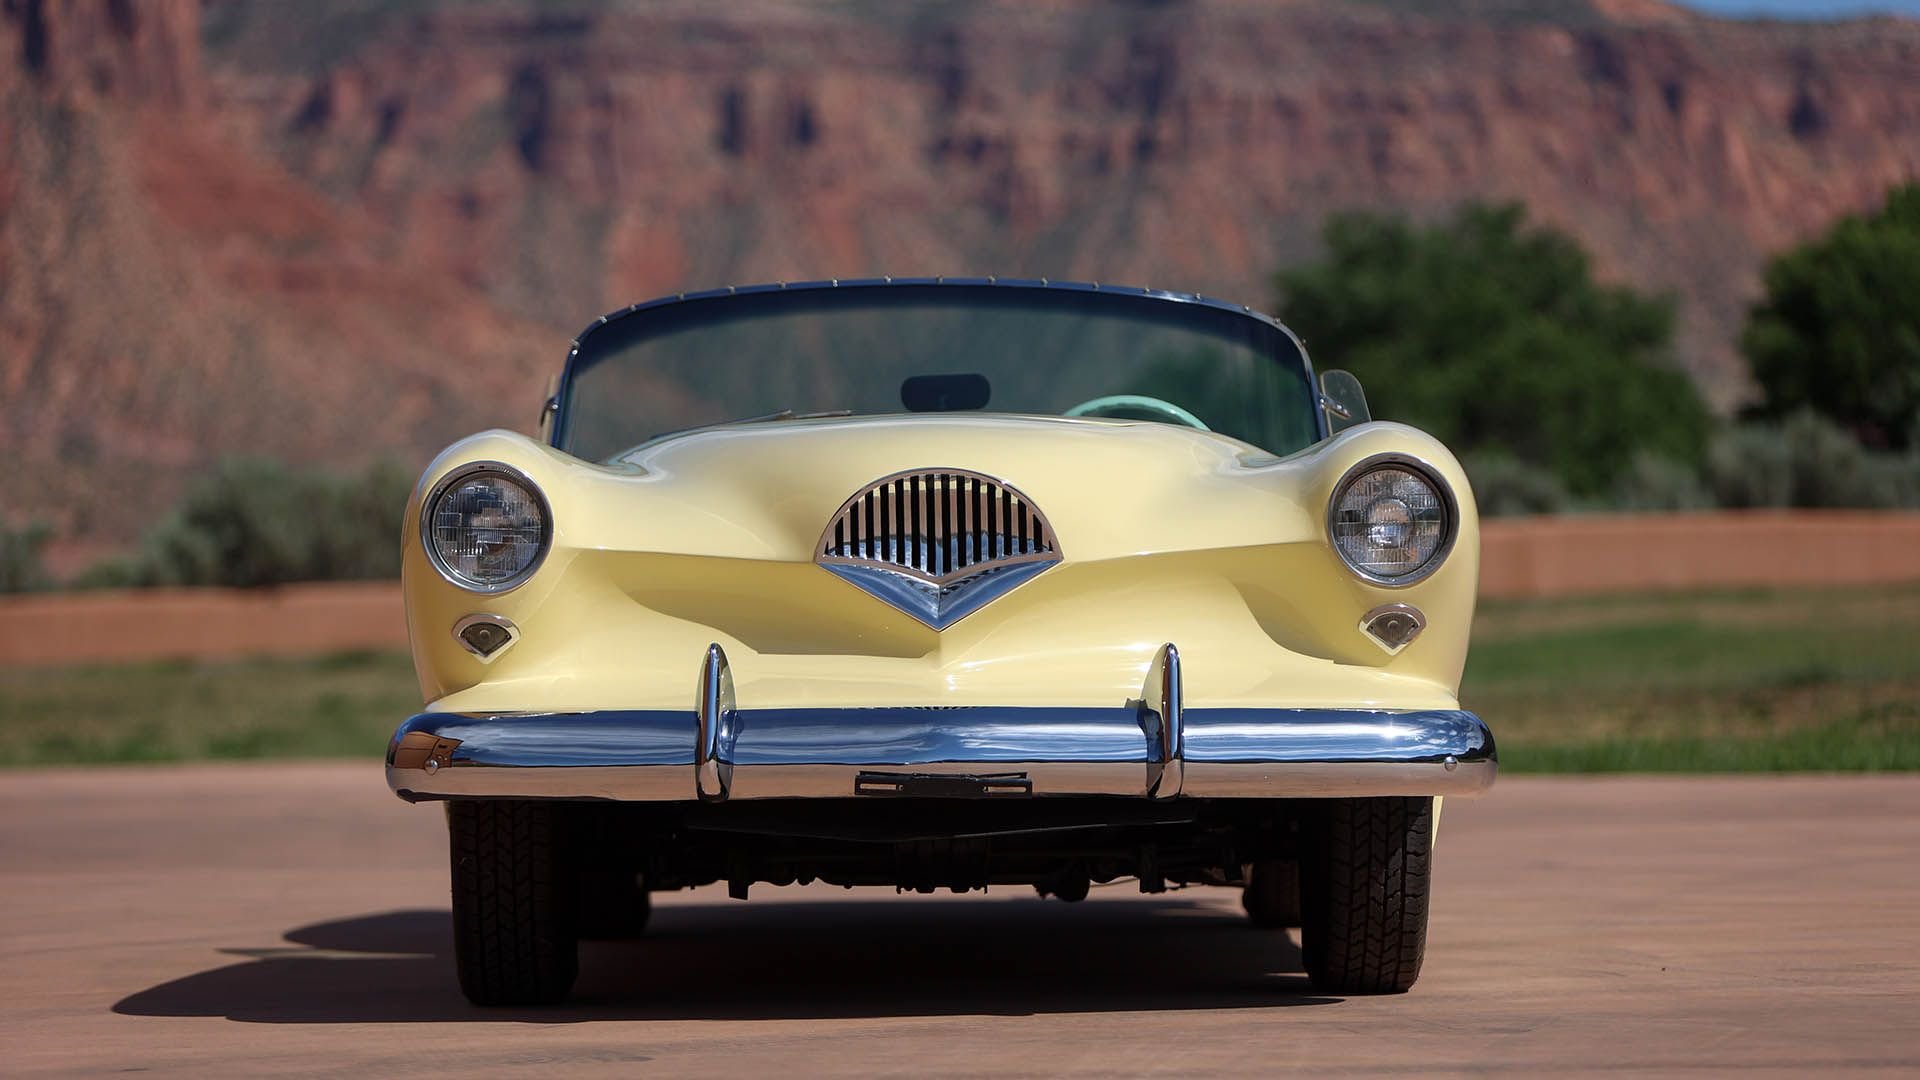 For Sale 1954 Kaiser-Darrin Roadster